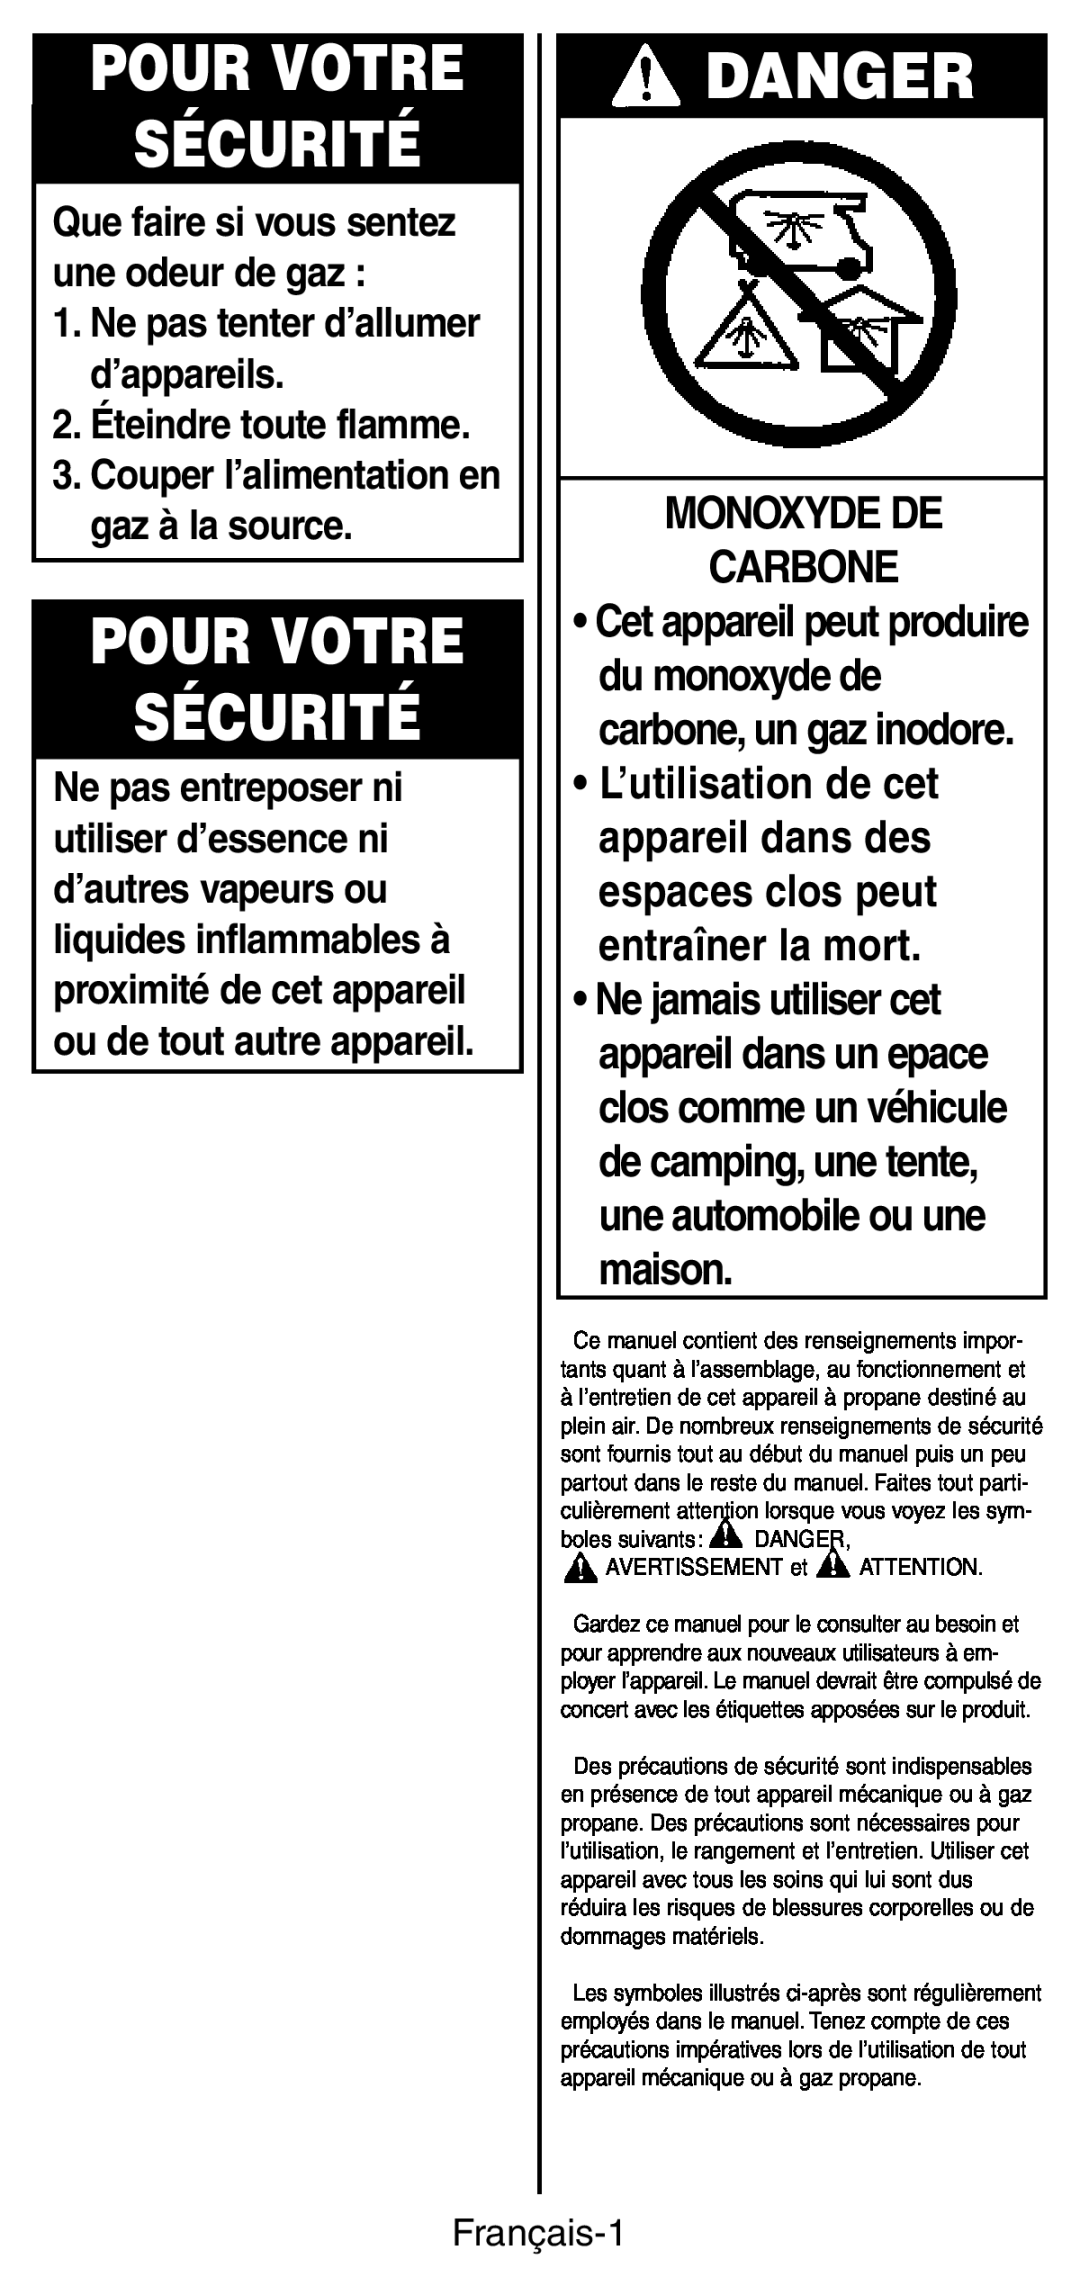 Coleman 9927 manual Pour Votre Sécurité, Monoxyde De Carbone, Danger, Ne pas tenter d’allumer d’appareils, Français-1 